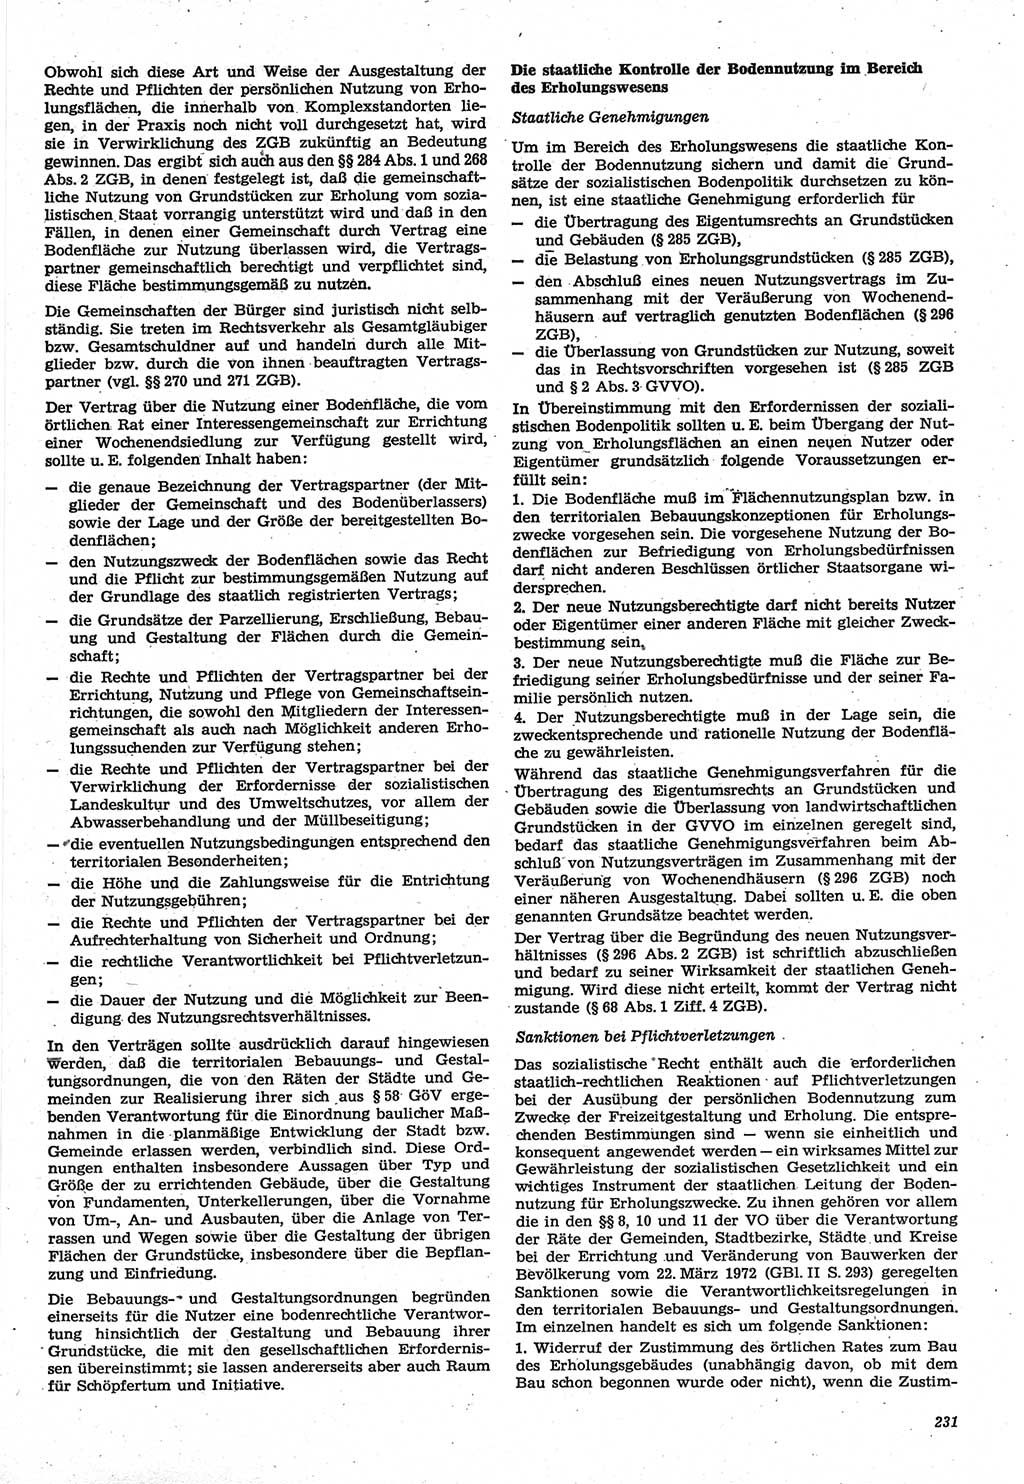 Neue Justiz (NJ), Zeitschrift für Recht und Rechtswissenschaft-Zeitschrift, sozialistisches Recht und Gesetzlichkeit, 31. Jahrgang 1977, Seite 231 (NJ DDR 1977, S. 231)